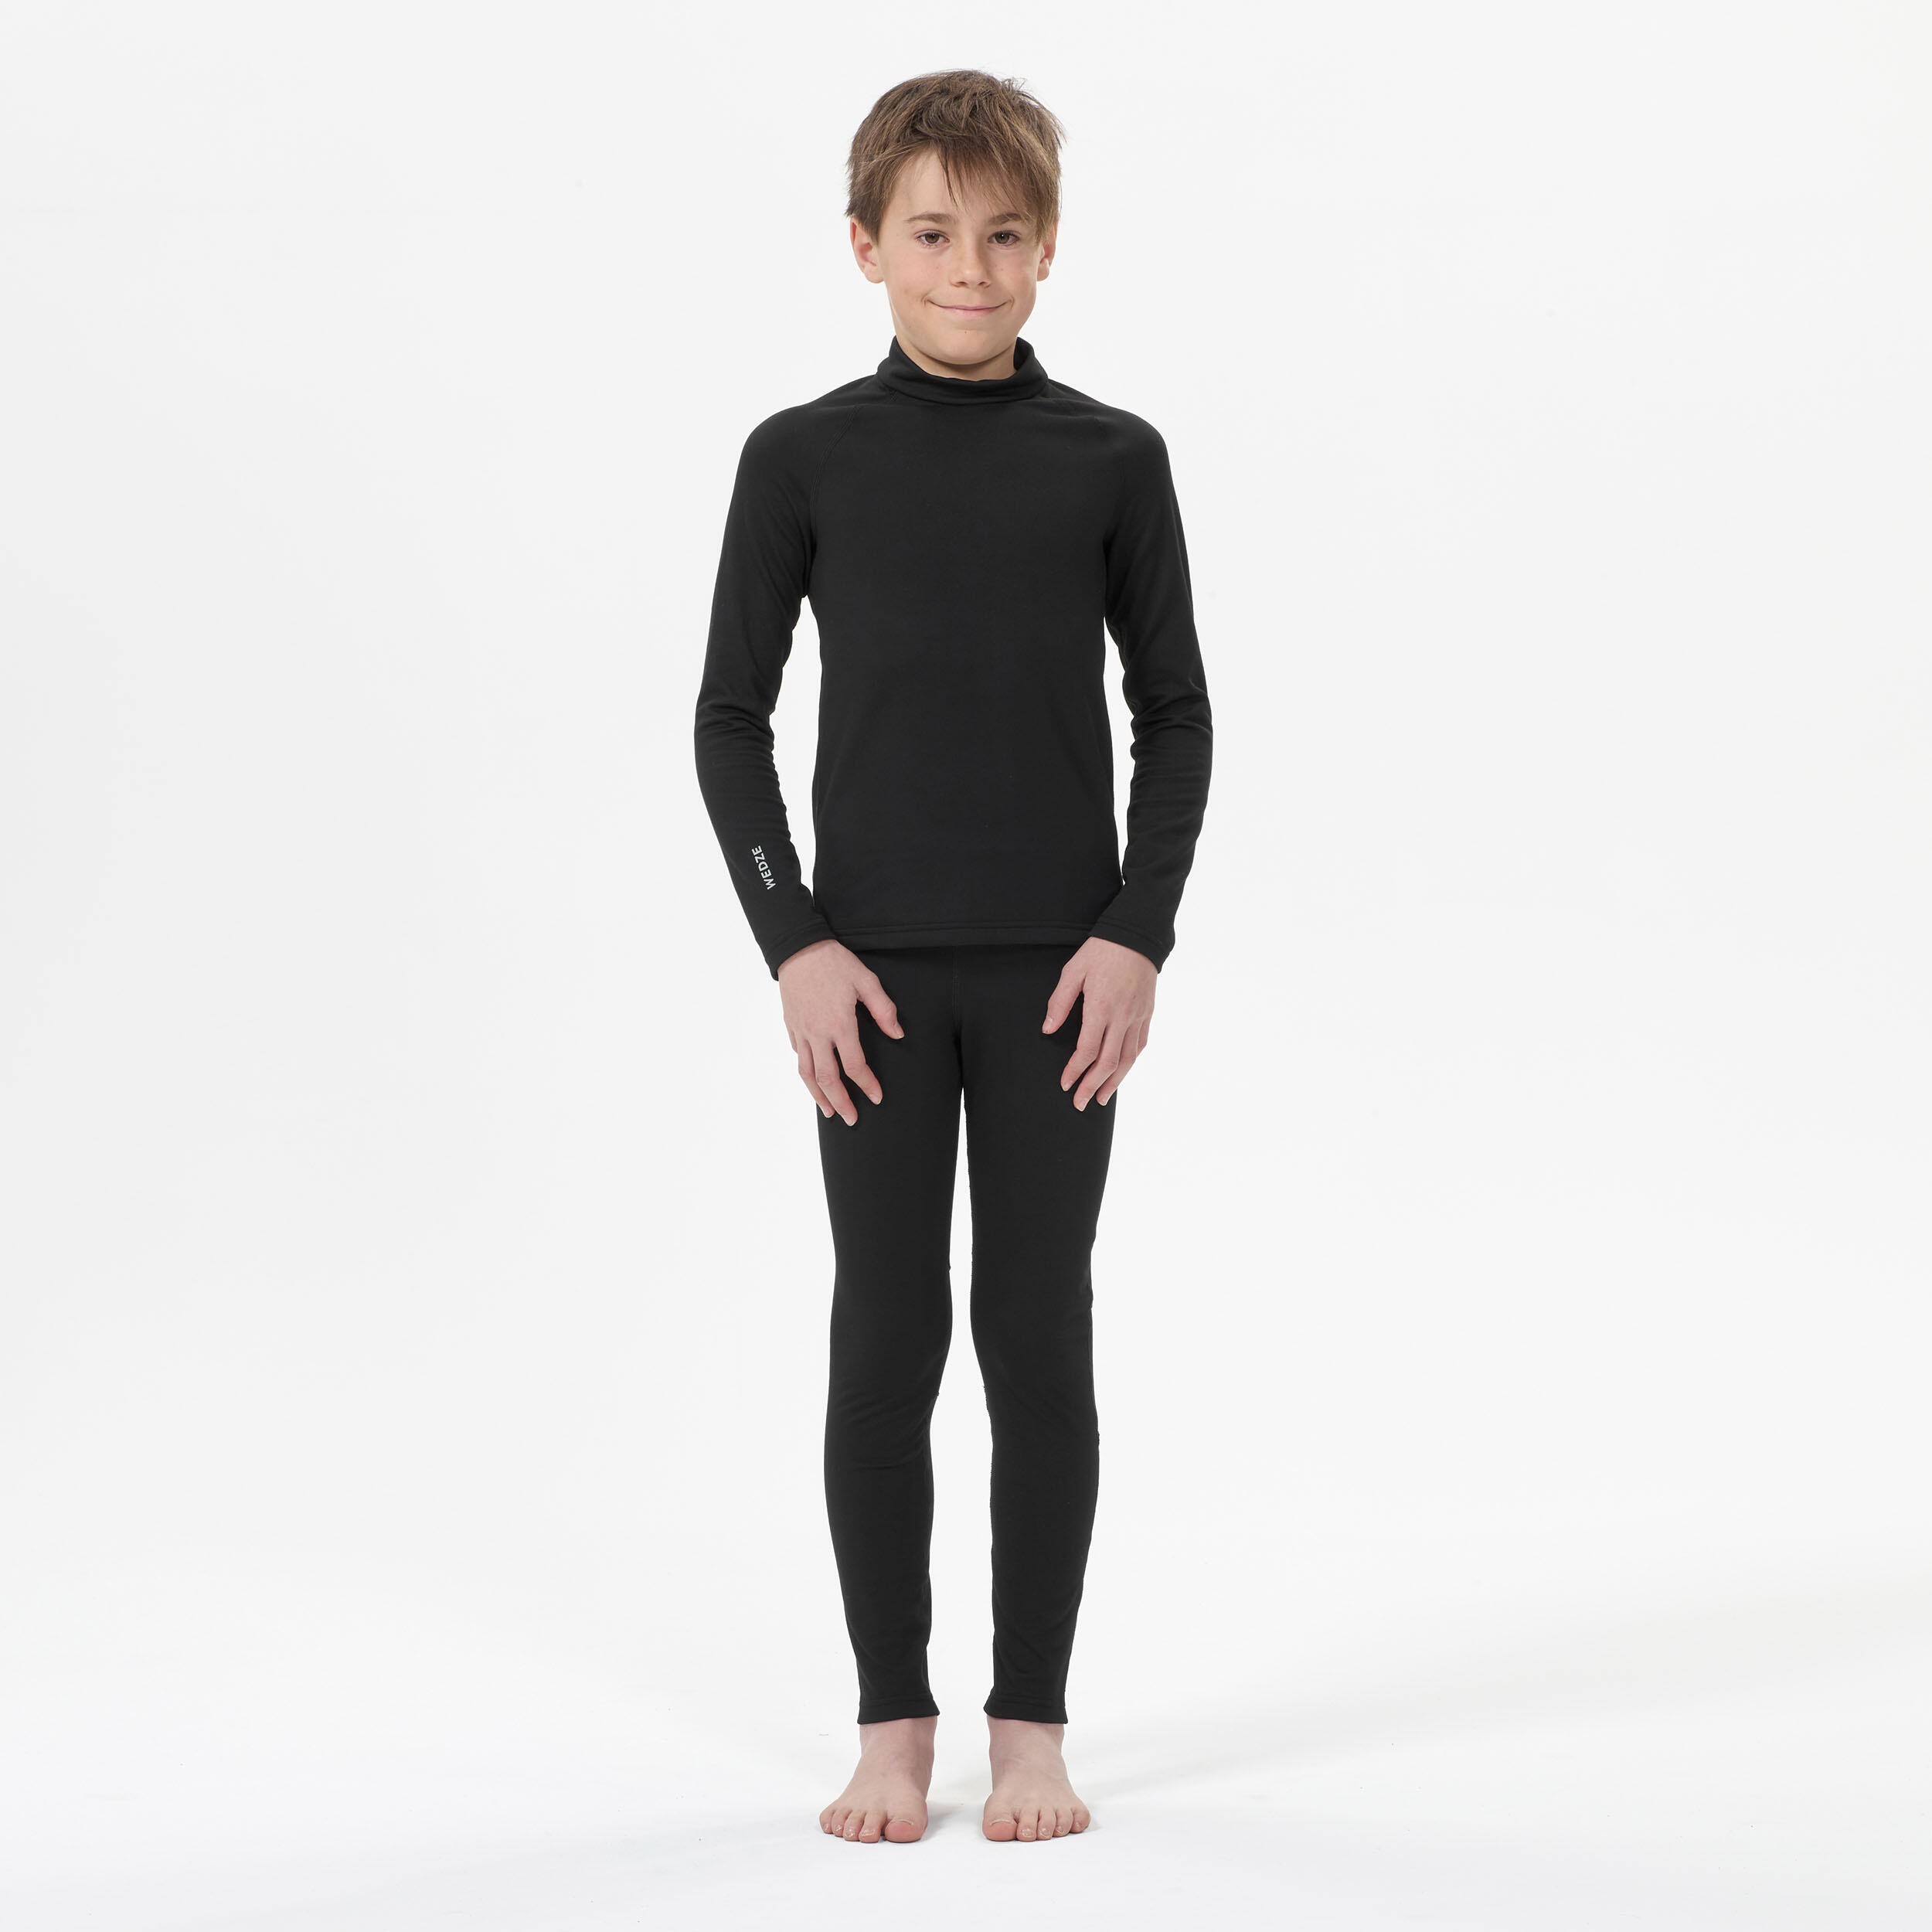 Kids’ thermal ski base layer trousers - BL 500 - black 2/7